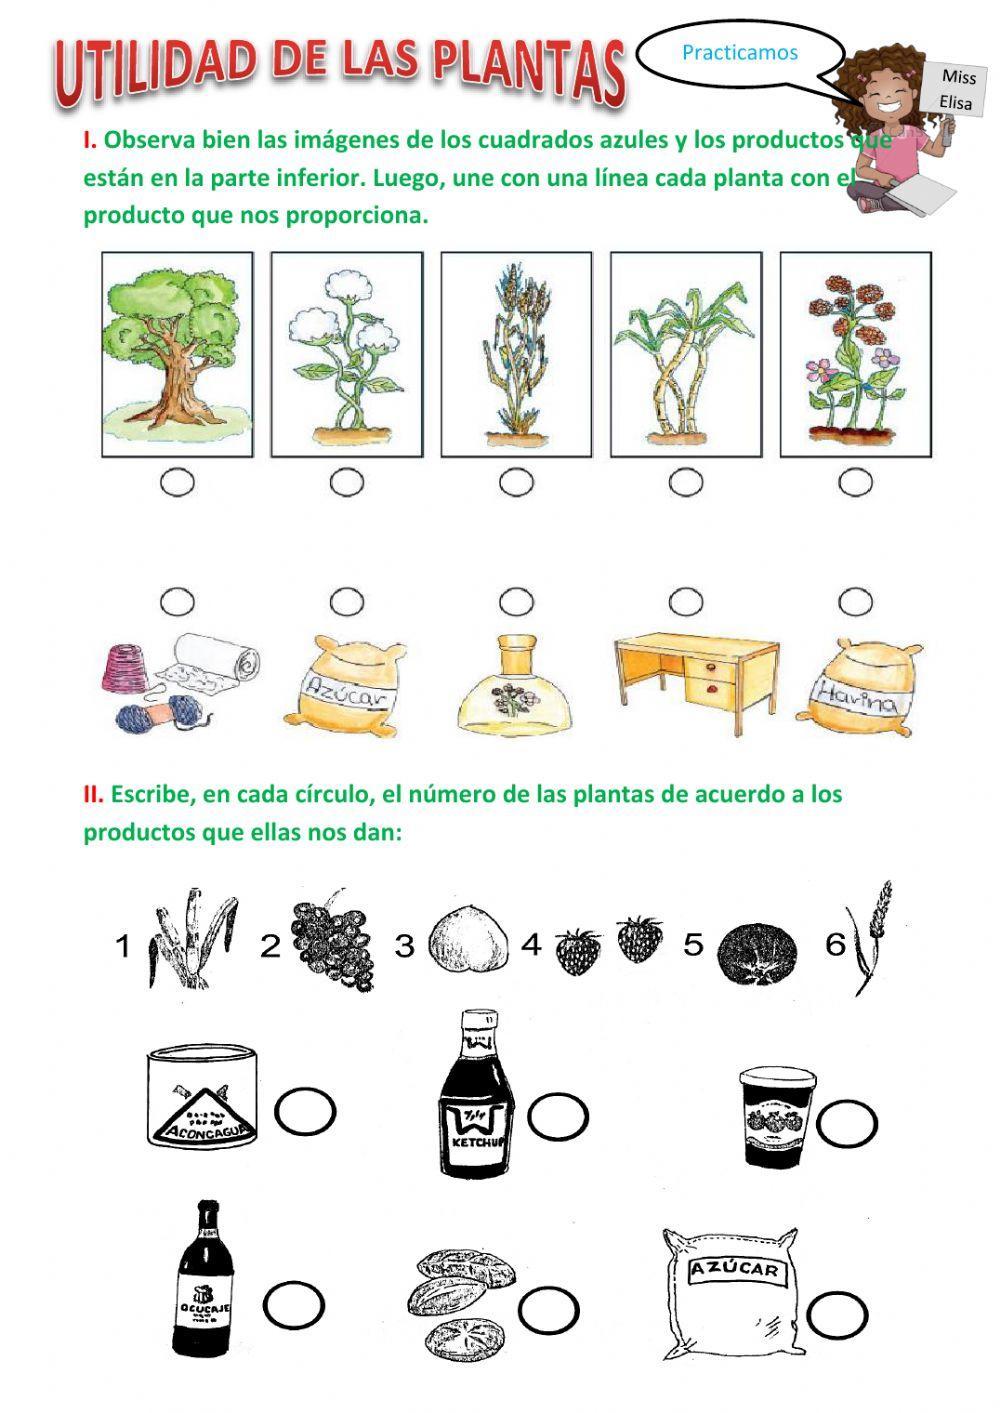 Clasificación de las plantas según su utilidad